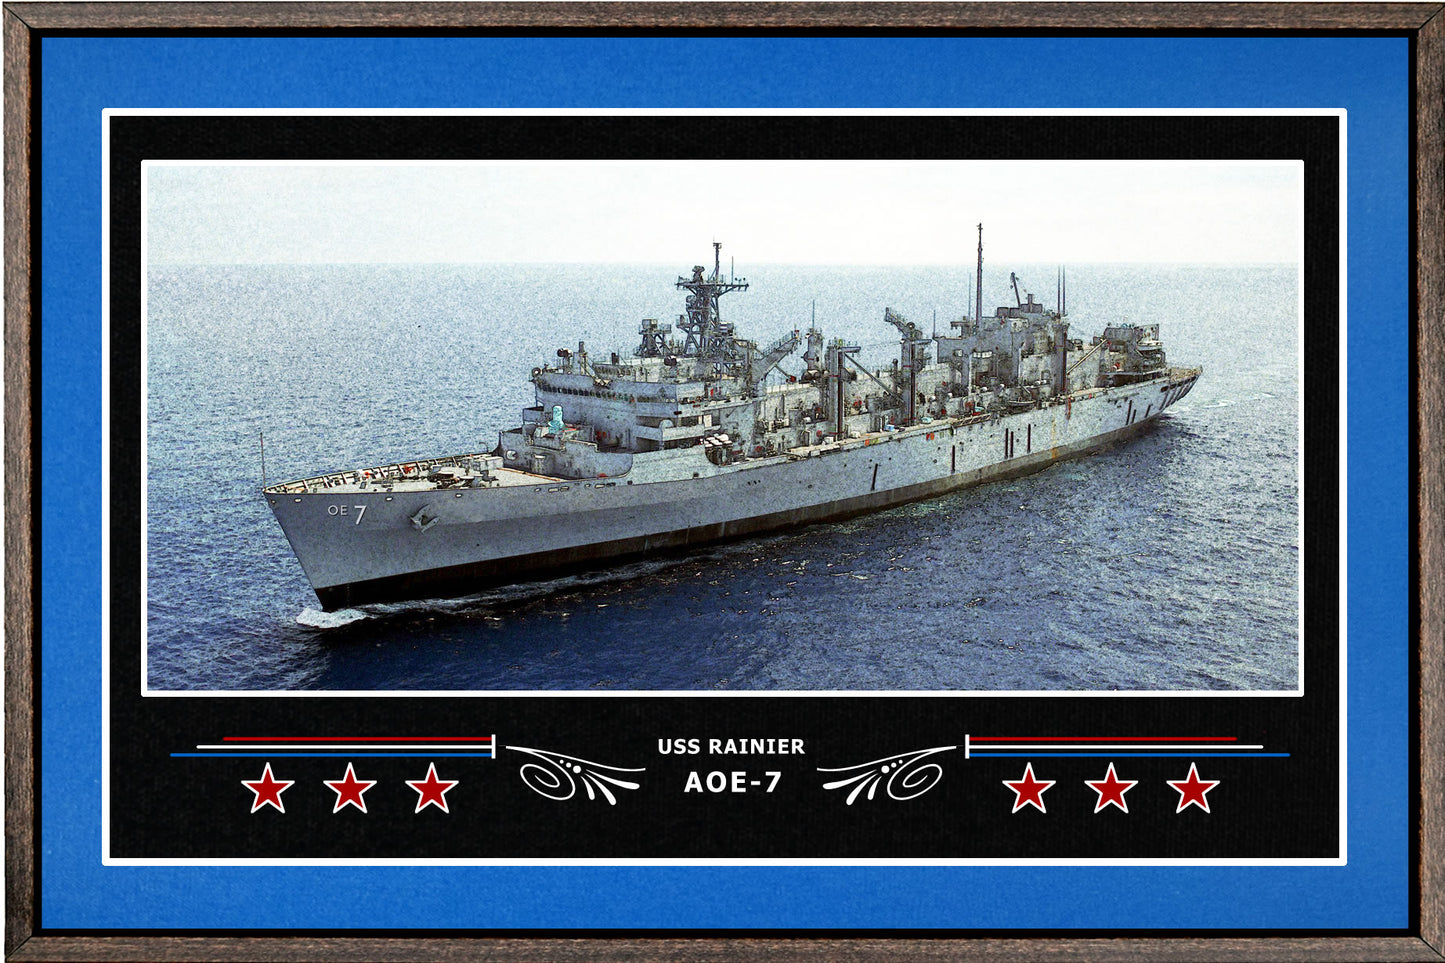 USS RAINIER AOE 7 BOX FRAMED CANVAS ART BLUE